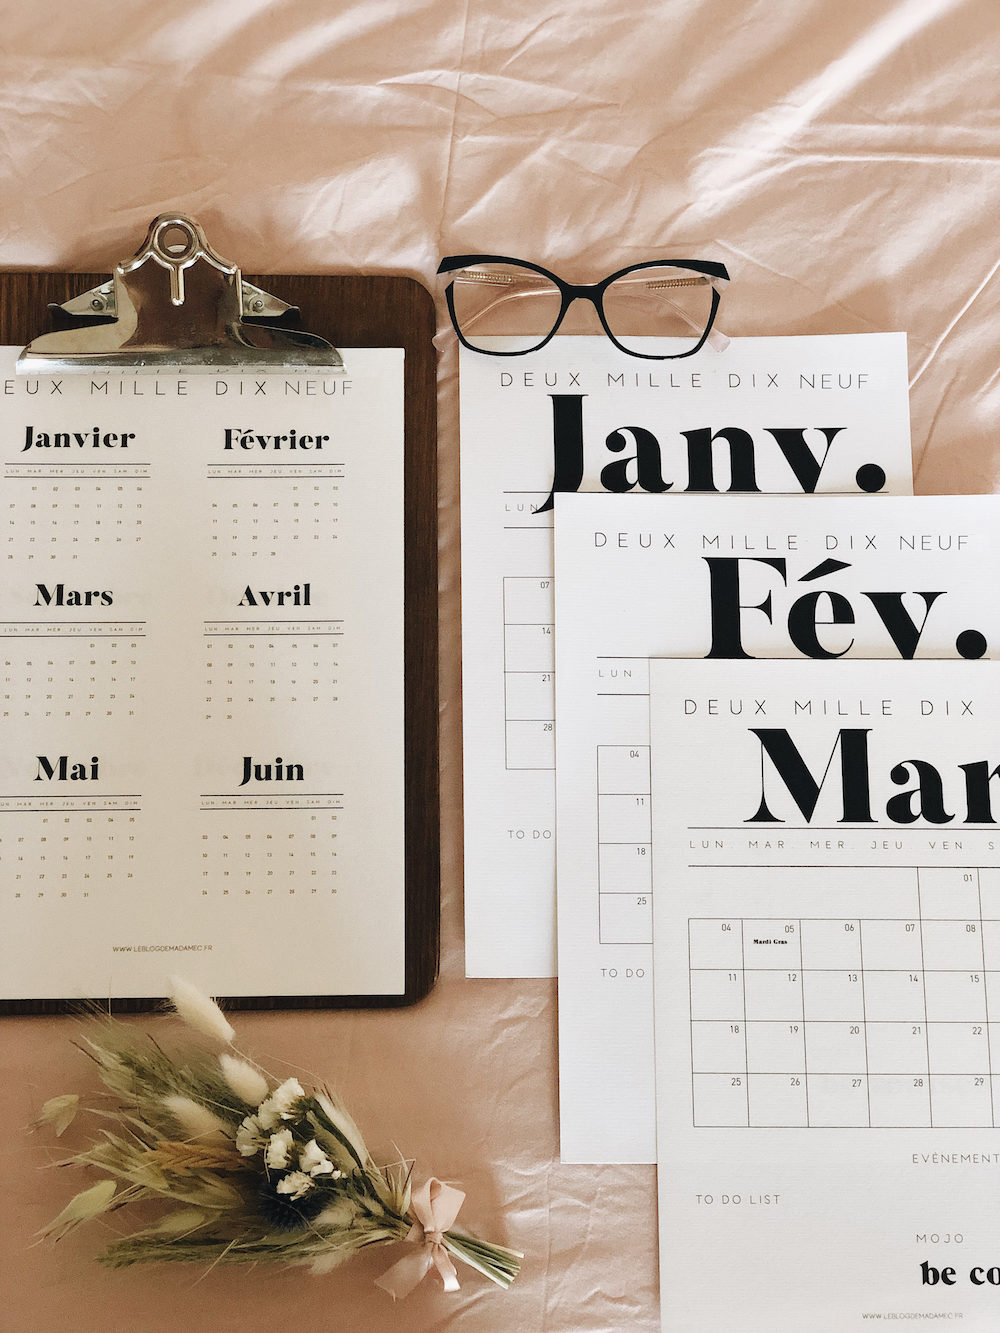 Kit planner 2019 - Blog Mariage Madame C